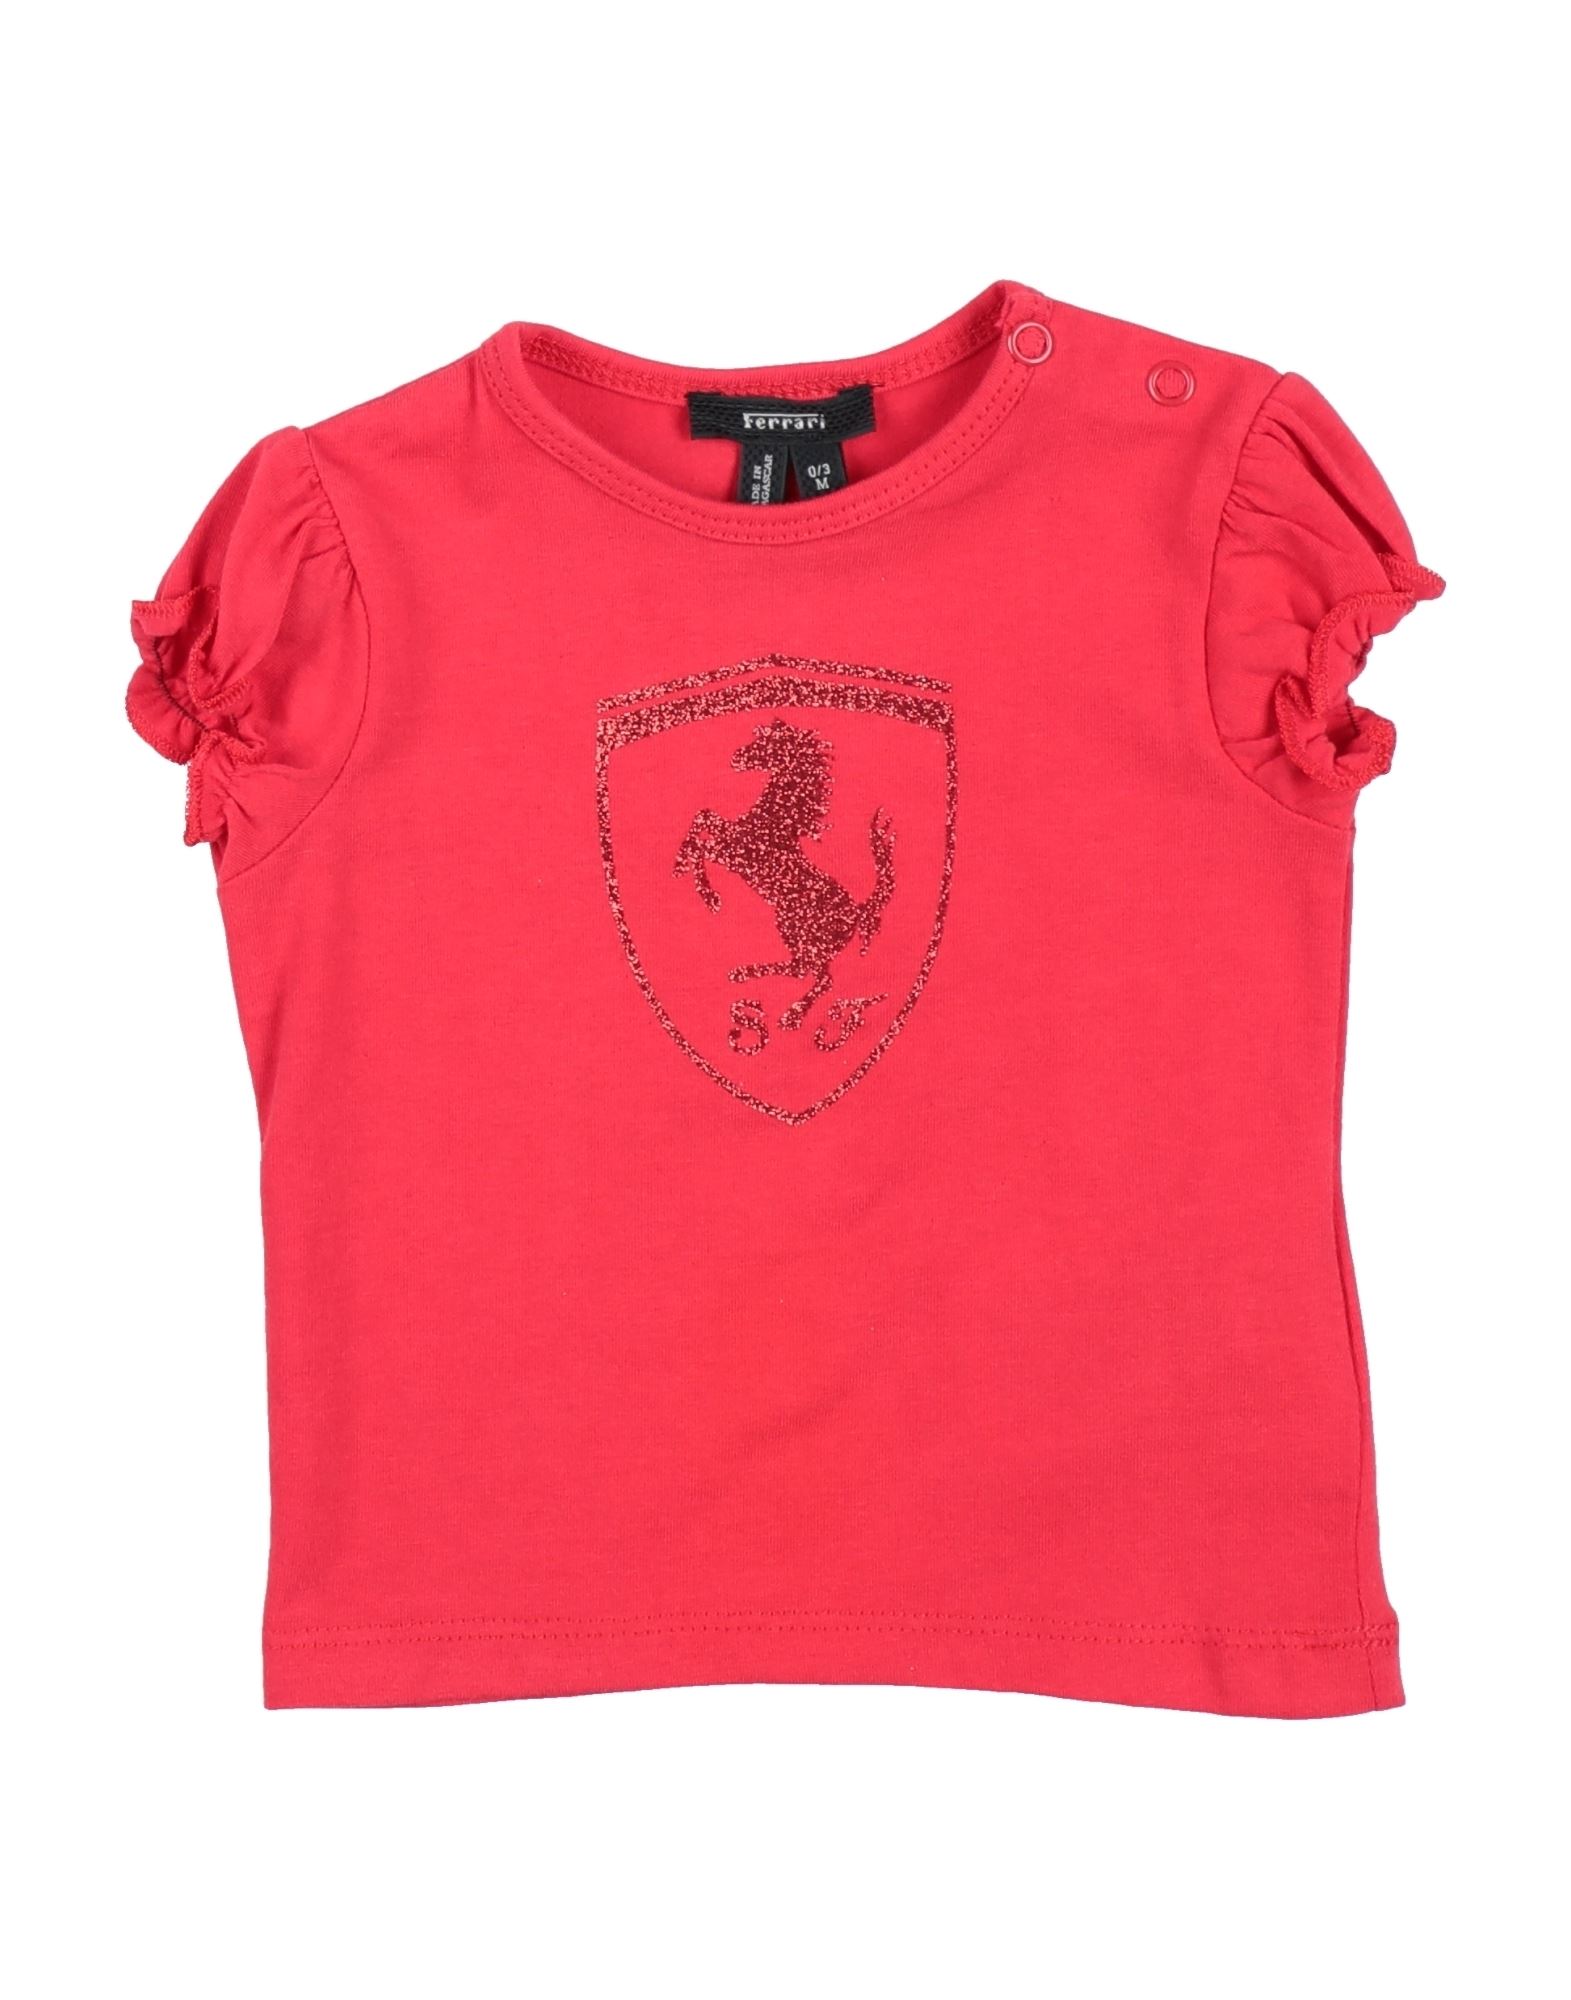 FERRARI T-shirts Kinder Rot von FERRARI